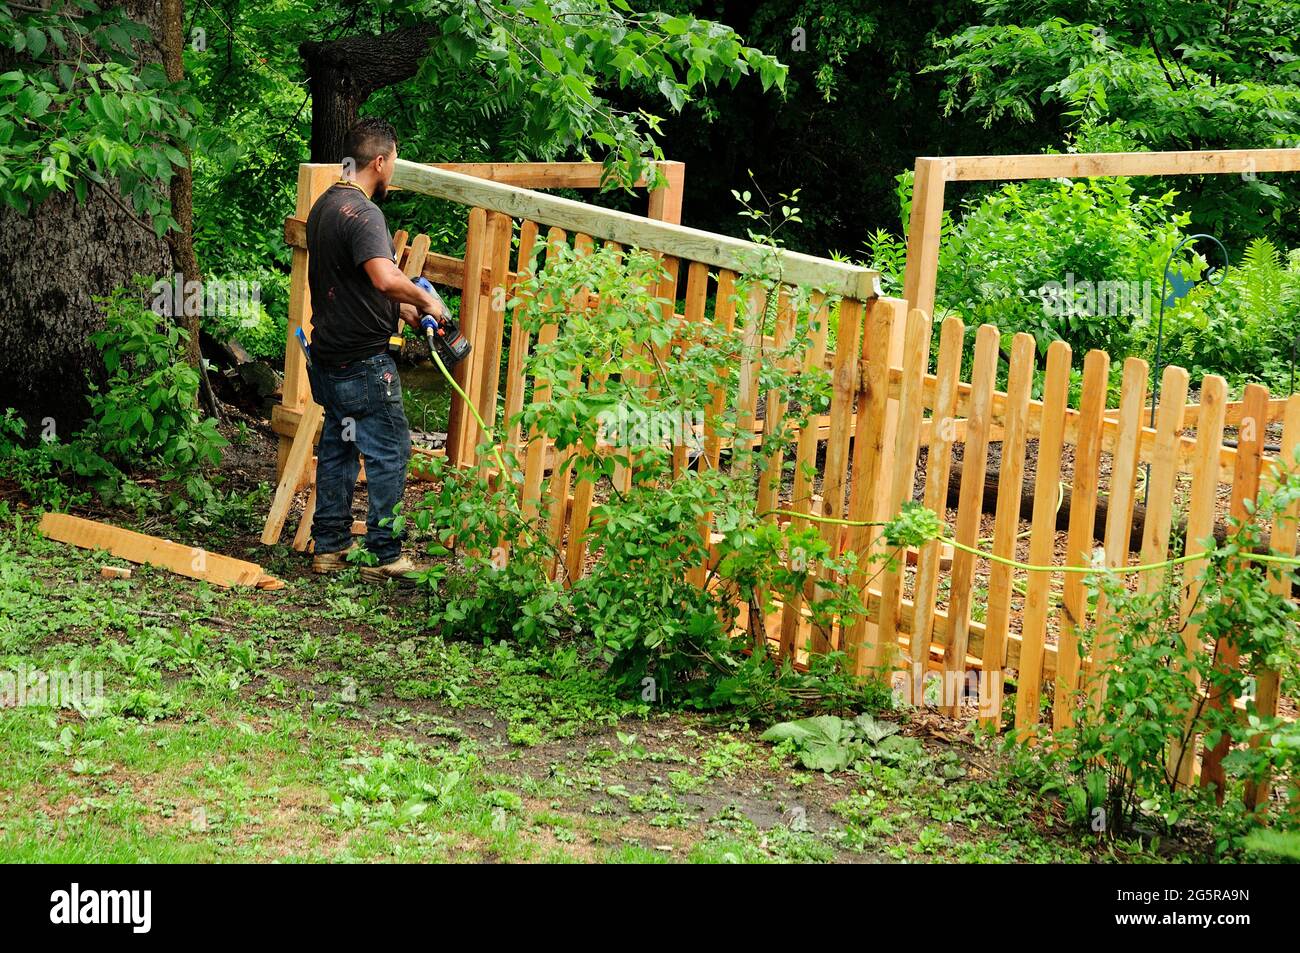 Worker installing back yard dog fence. Stock Photo